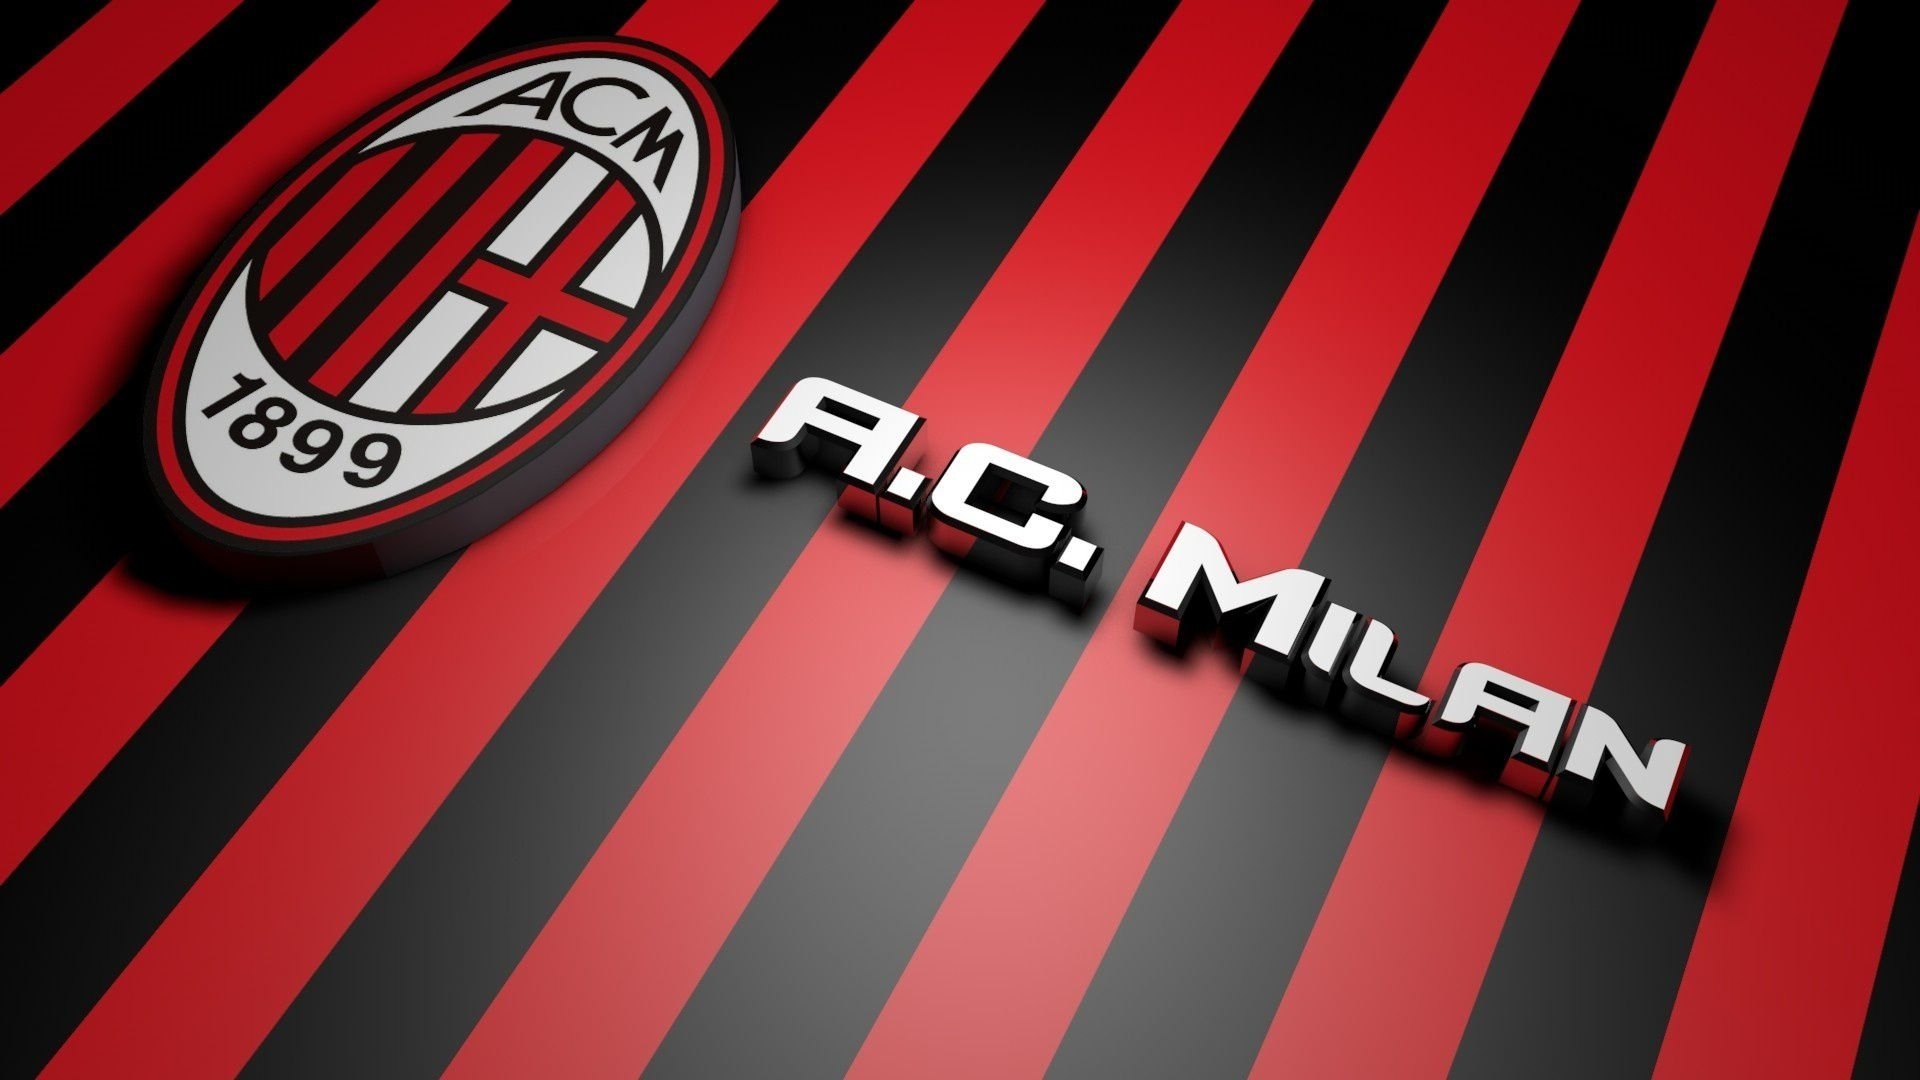 Logo AC Milan (Sports), Milan football pride, Iconic AC Milan logo, Football club emblem, 1920x1080 Full HD Desktop